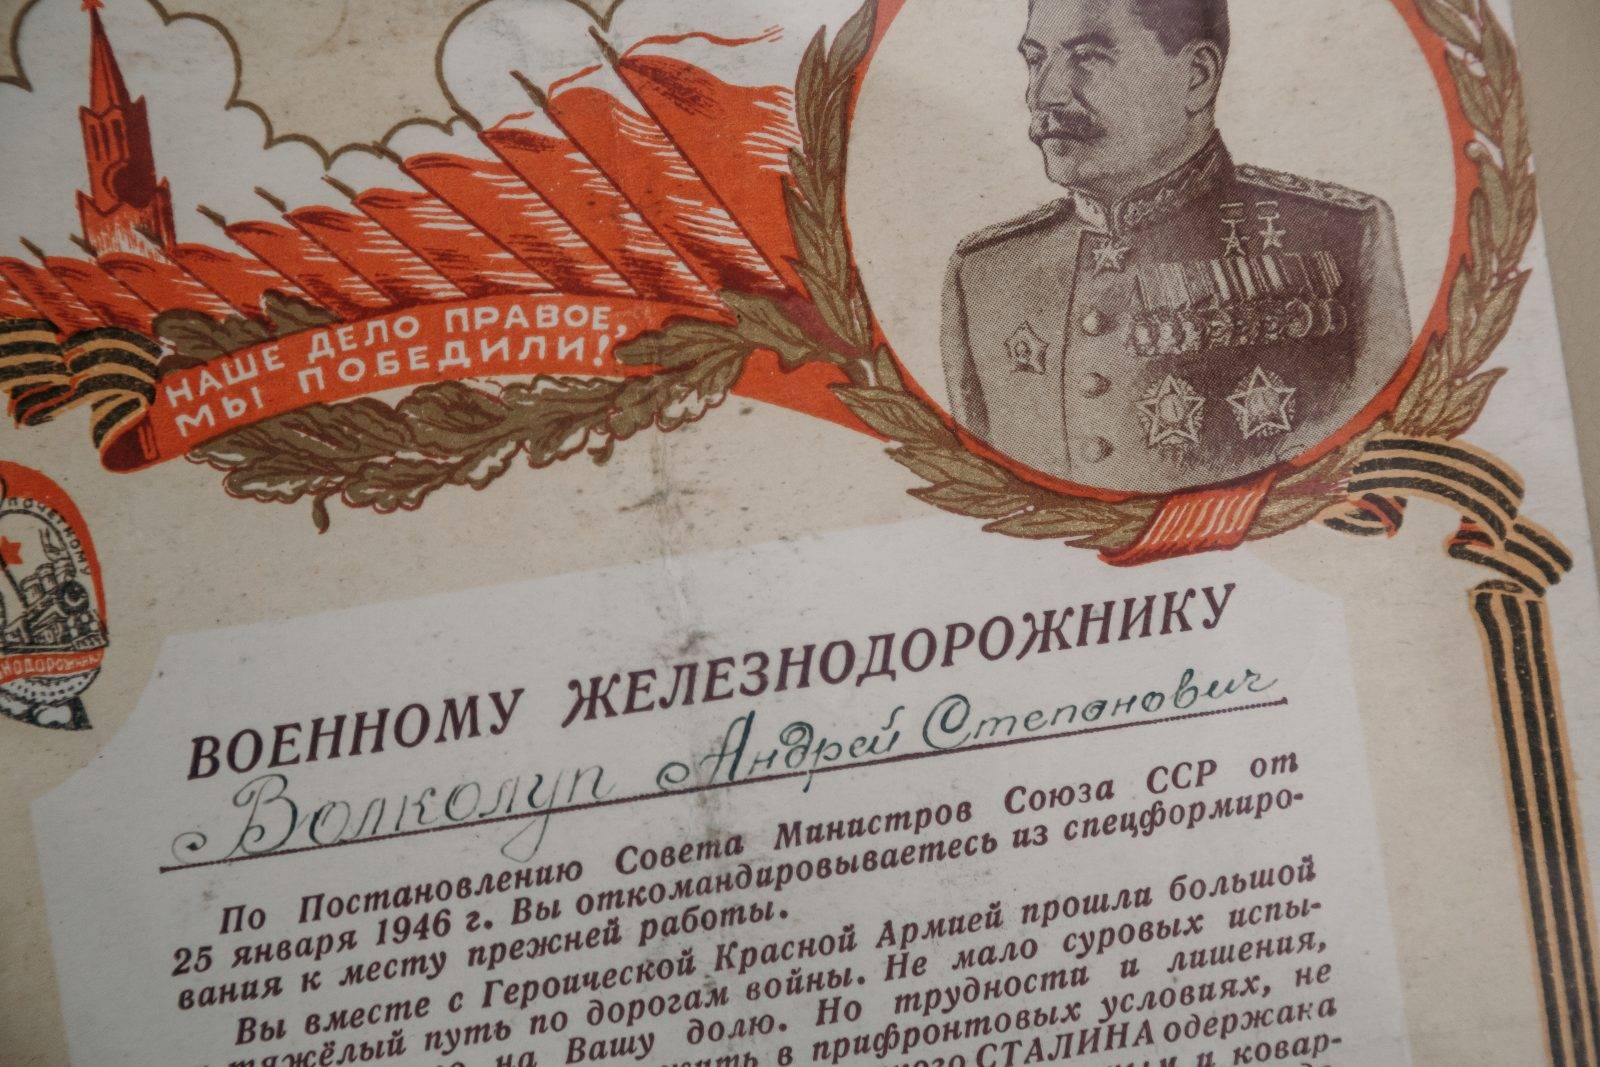 Bolsevik diktatúra összefoglalása